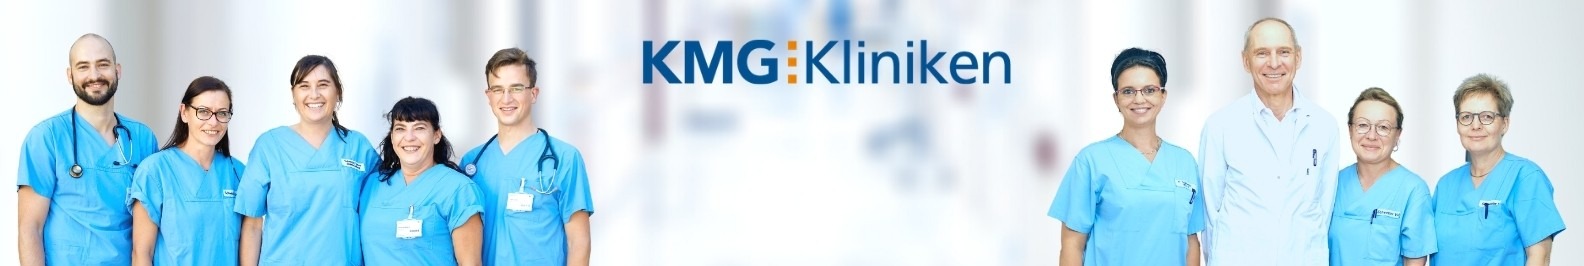 KMG Kliniken background